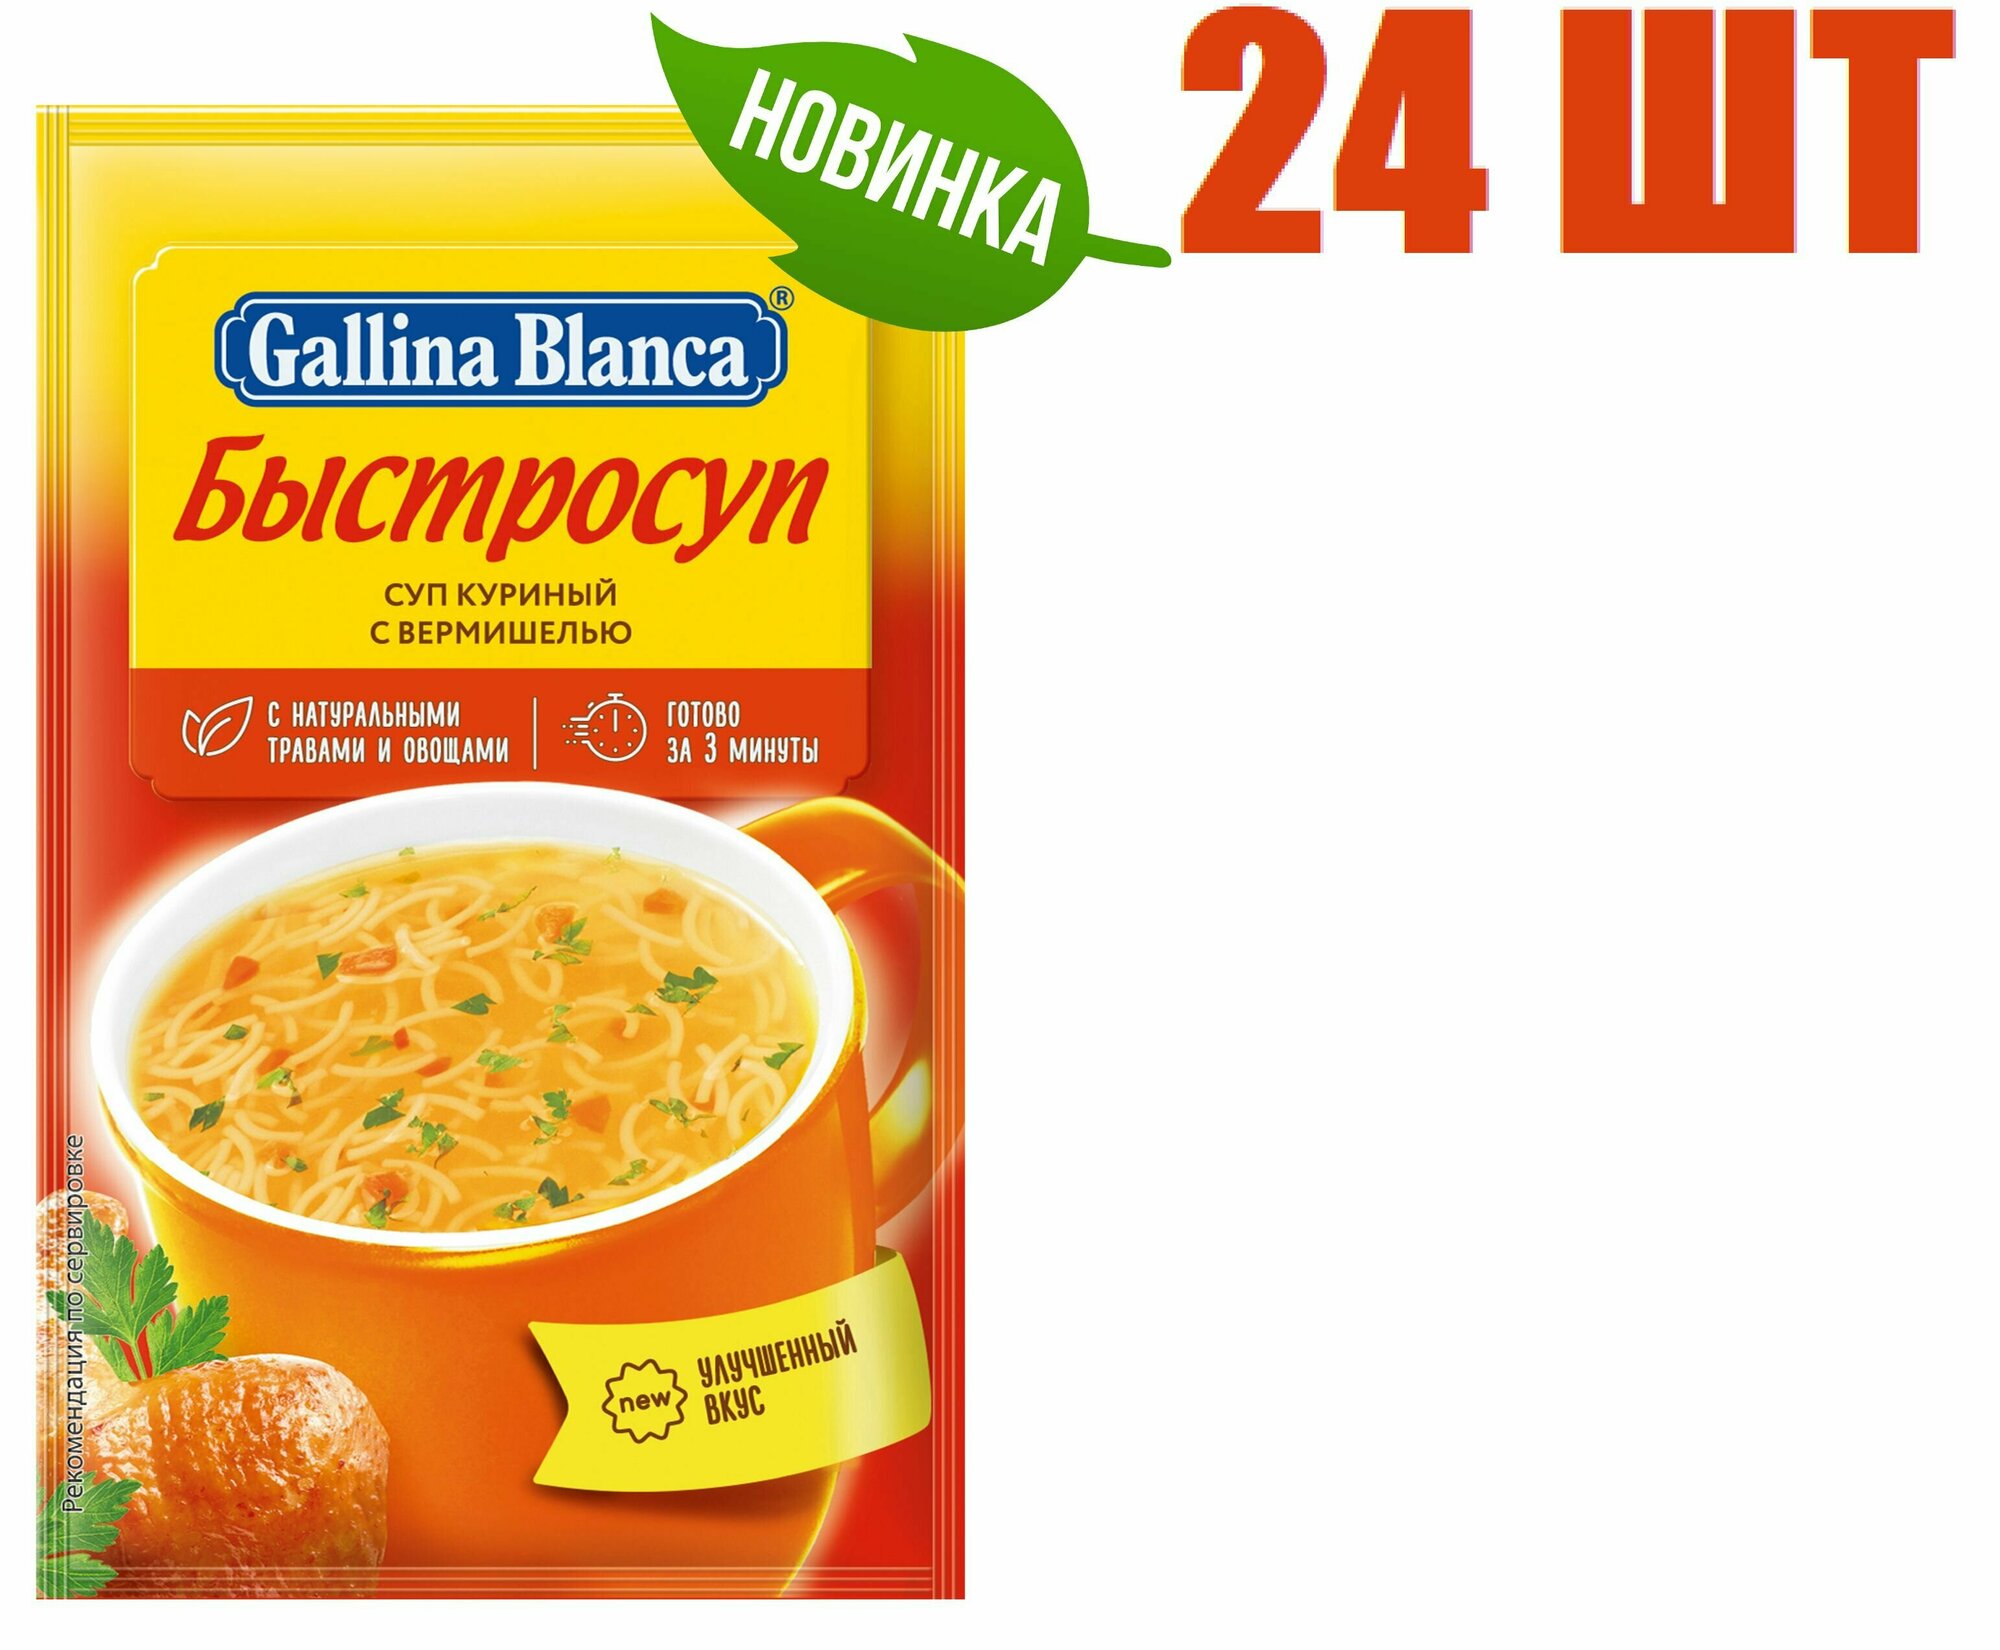 Суп быстрого приготовления, "Gallina Blanca", "Быстросуп куриный с лапшой", 15г 24 шт